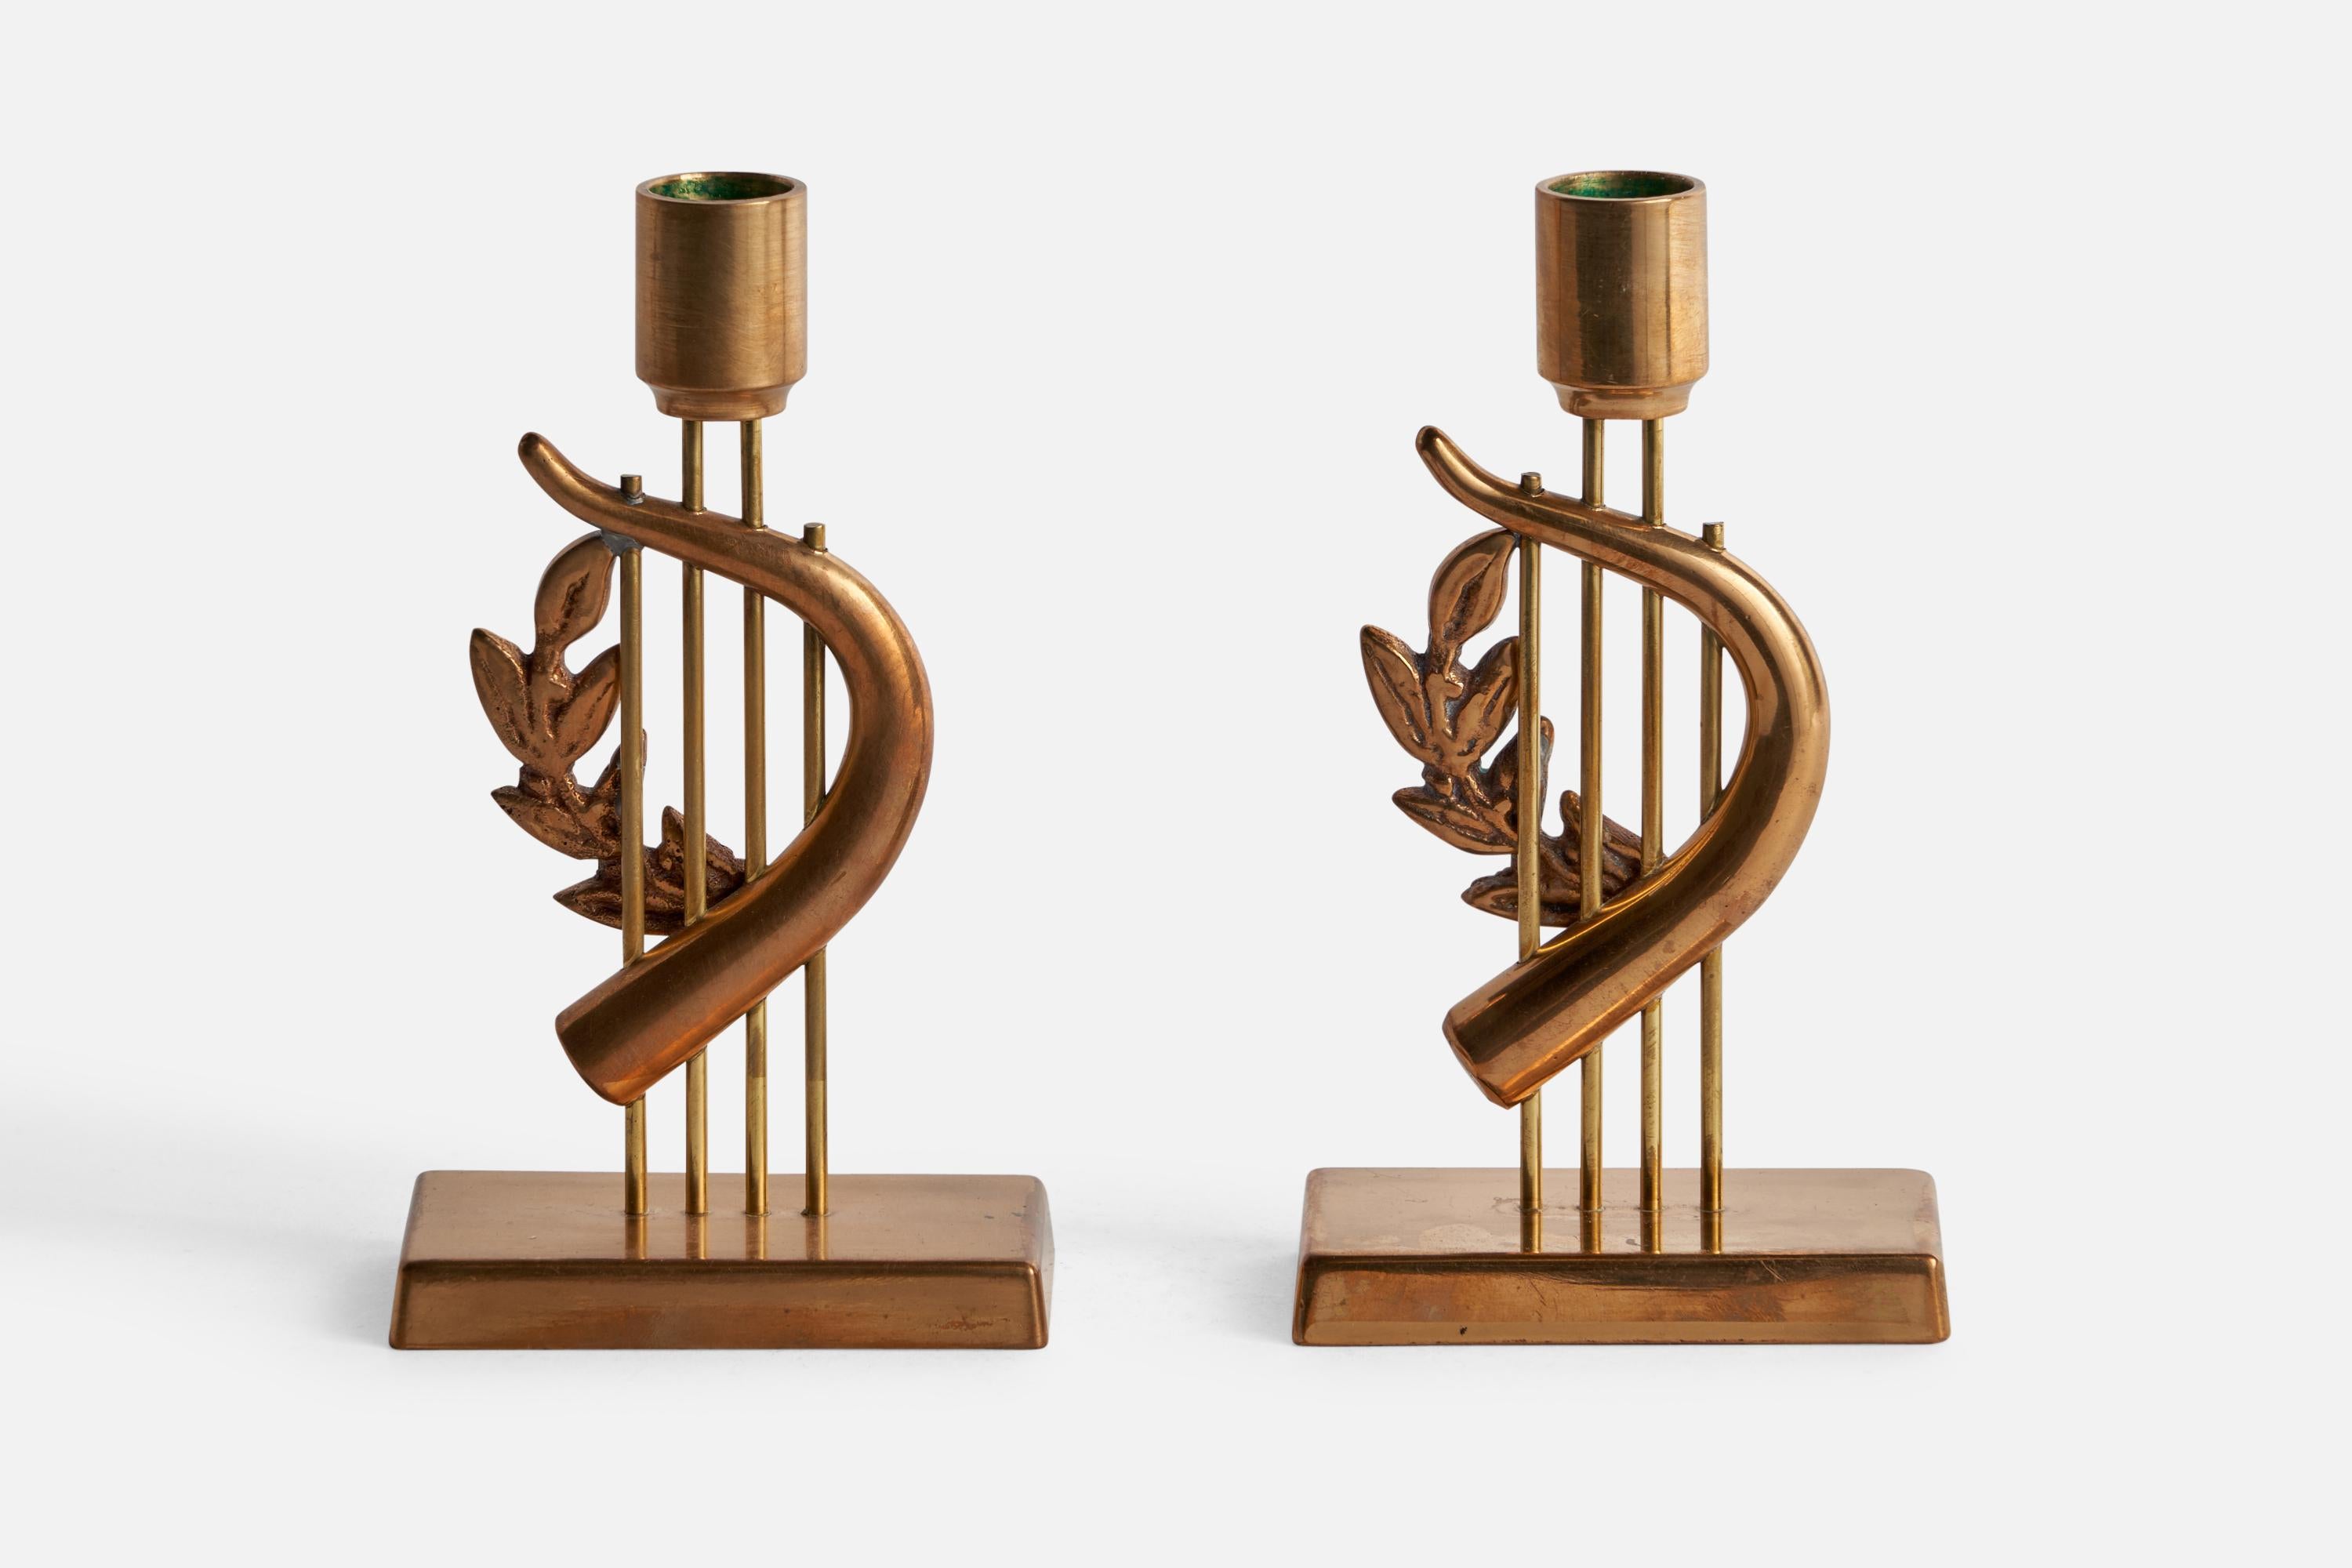 Ein Paar Kerzenständer aus Messing, entworfen und hergestellt in Schweden. Geprägtes Design G. Magnusson und datiert 1976.

Geeignet für Kerzen mit einem Durchmesser von 0.65